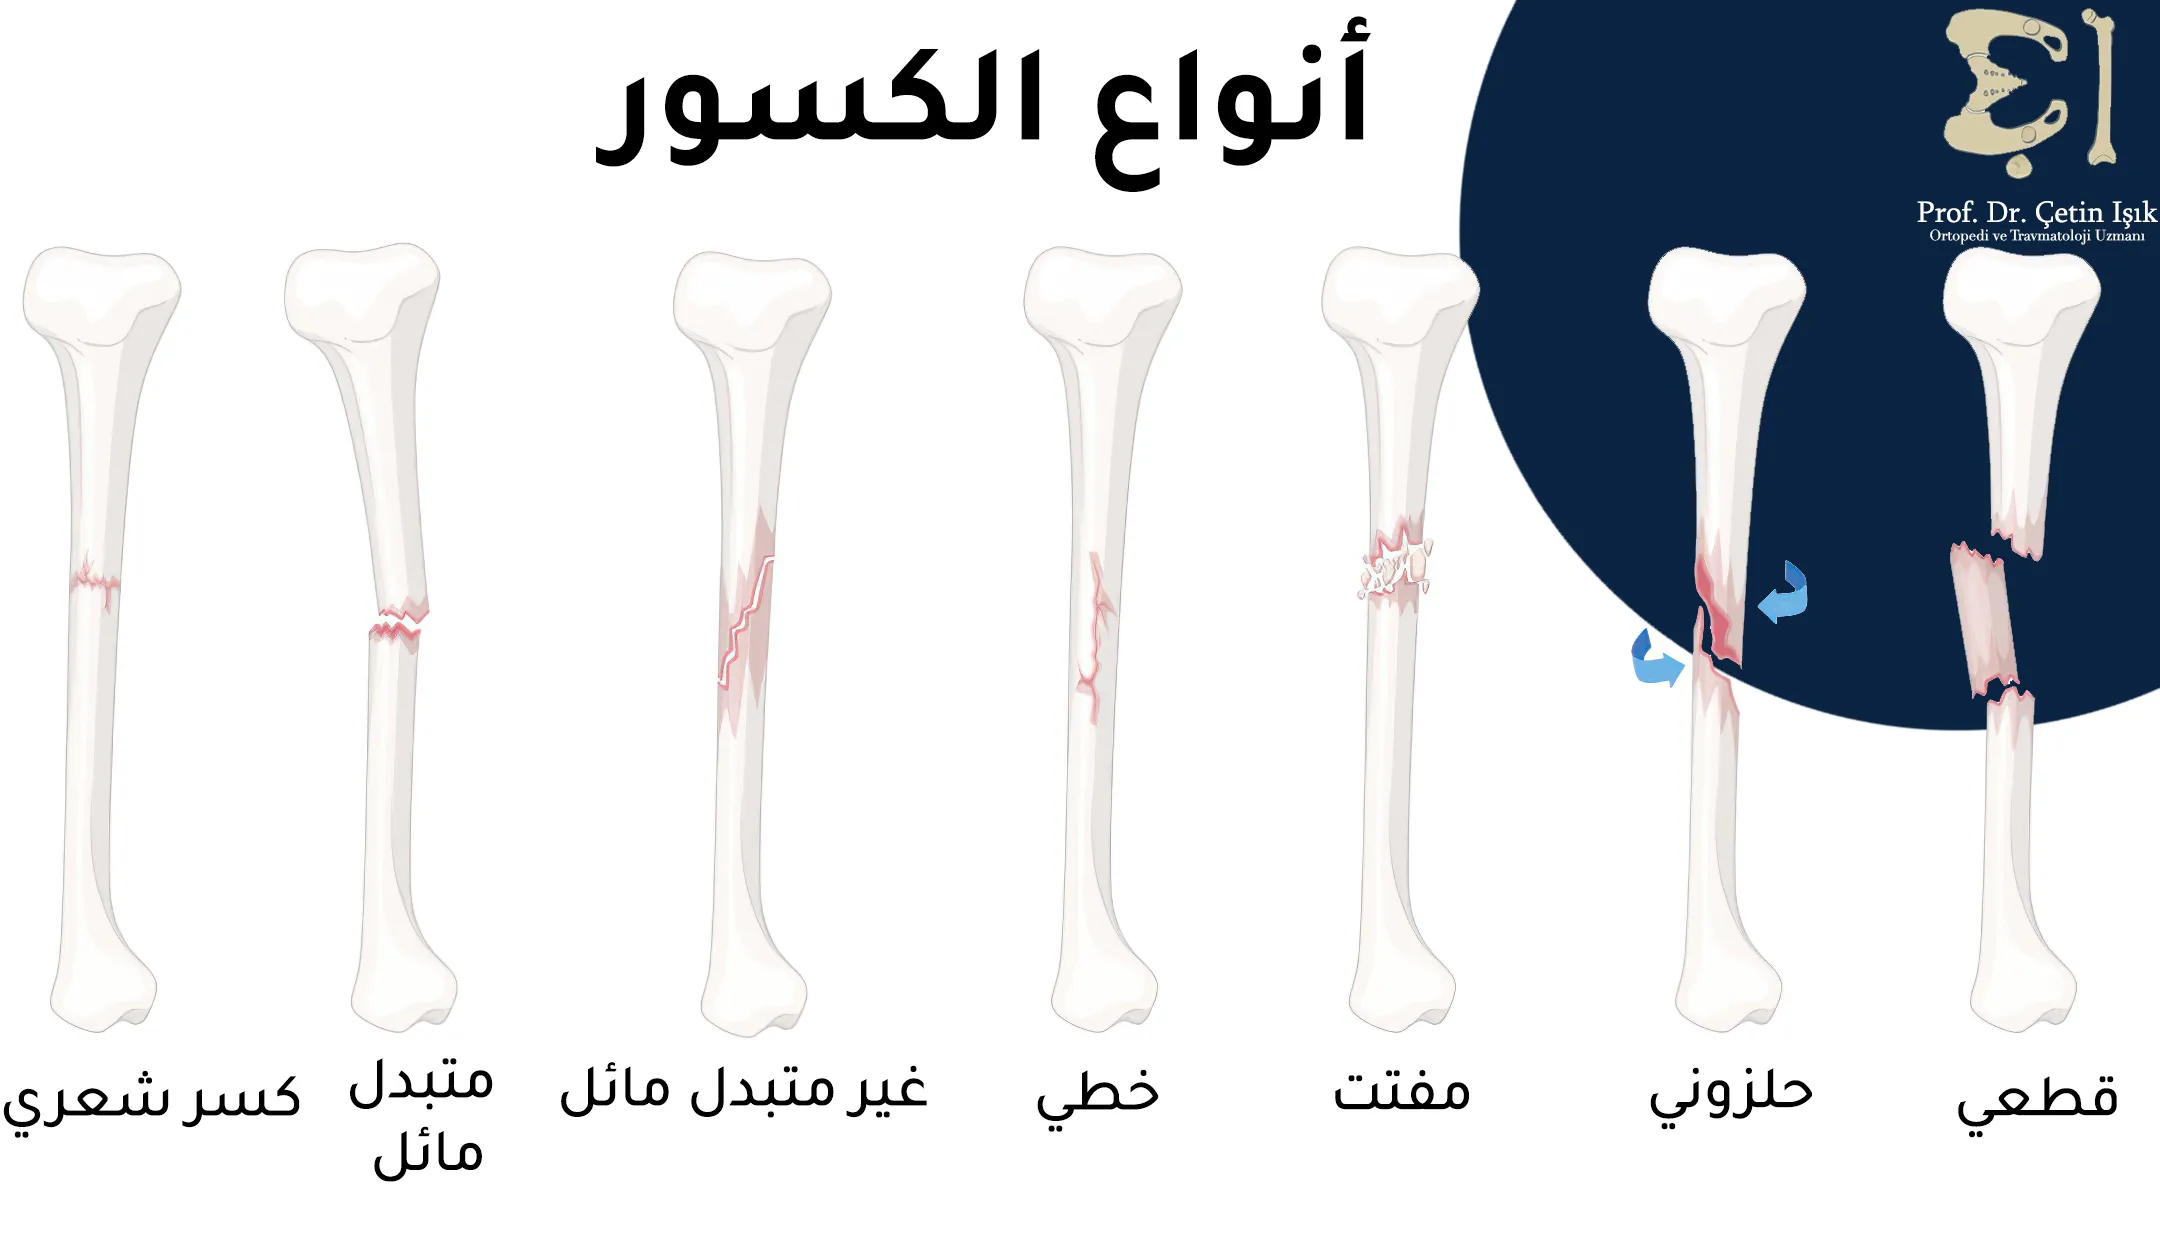 هنالك سبع أنواع لكسور الساق وهي الكسر القطعي والحلزوني والمفتت والخطي والكسر الشعري والكسر المتبدل أو غير المتبدل